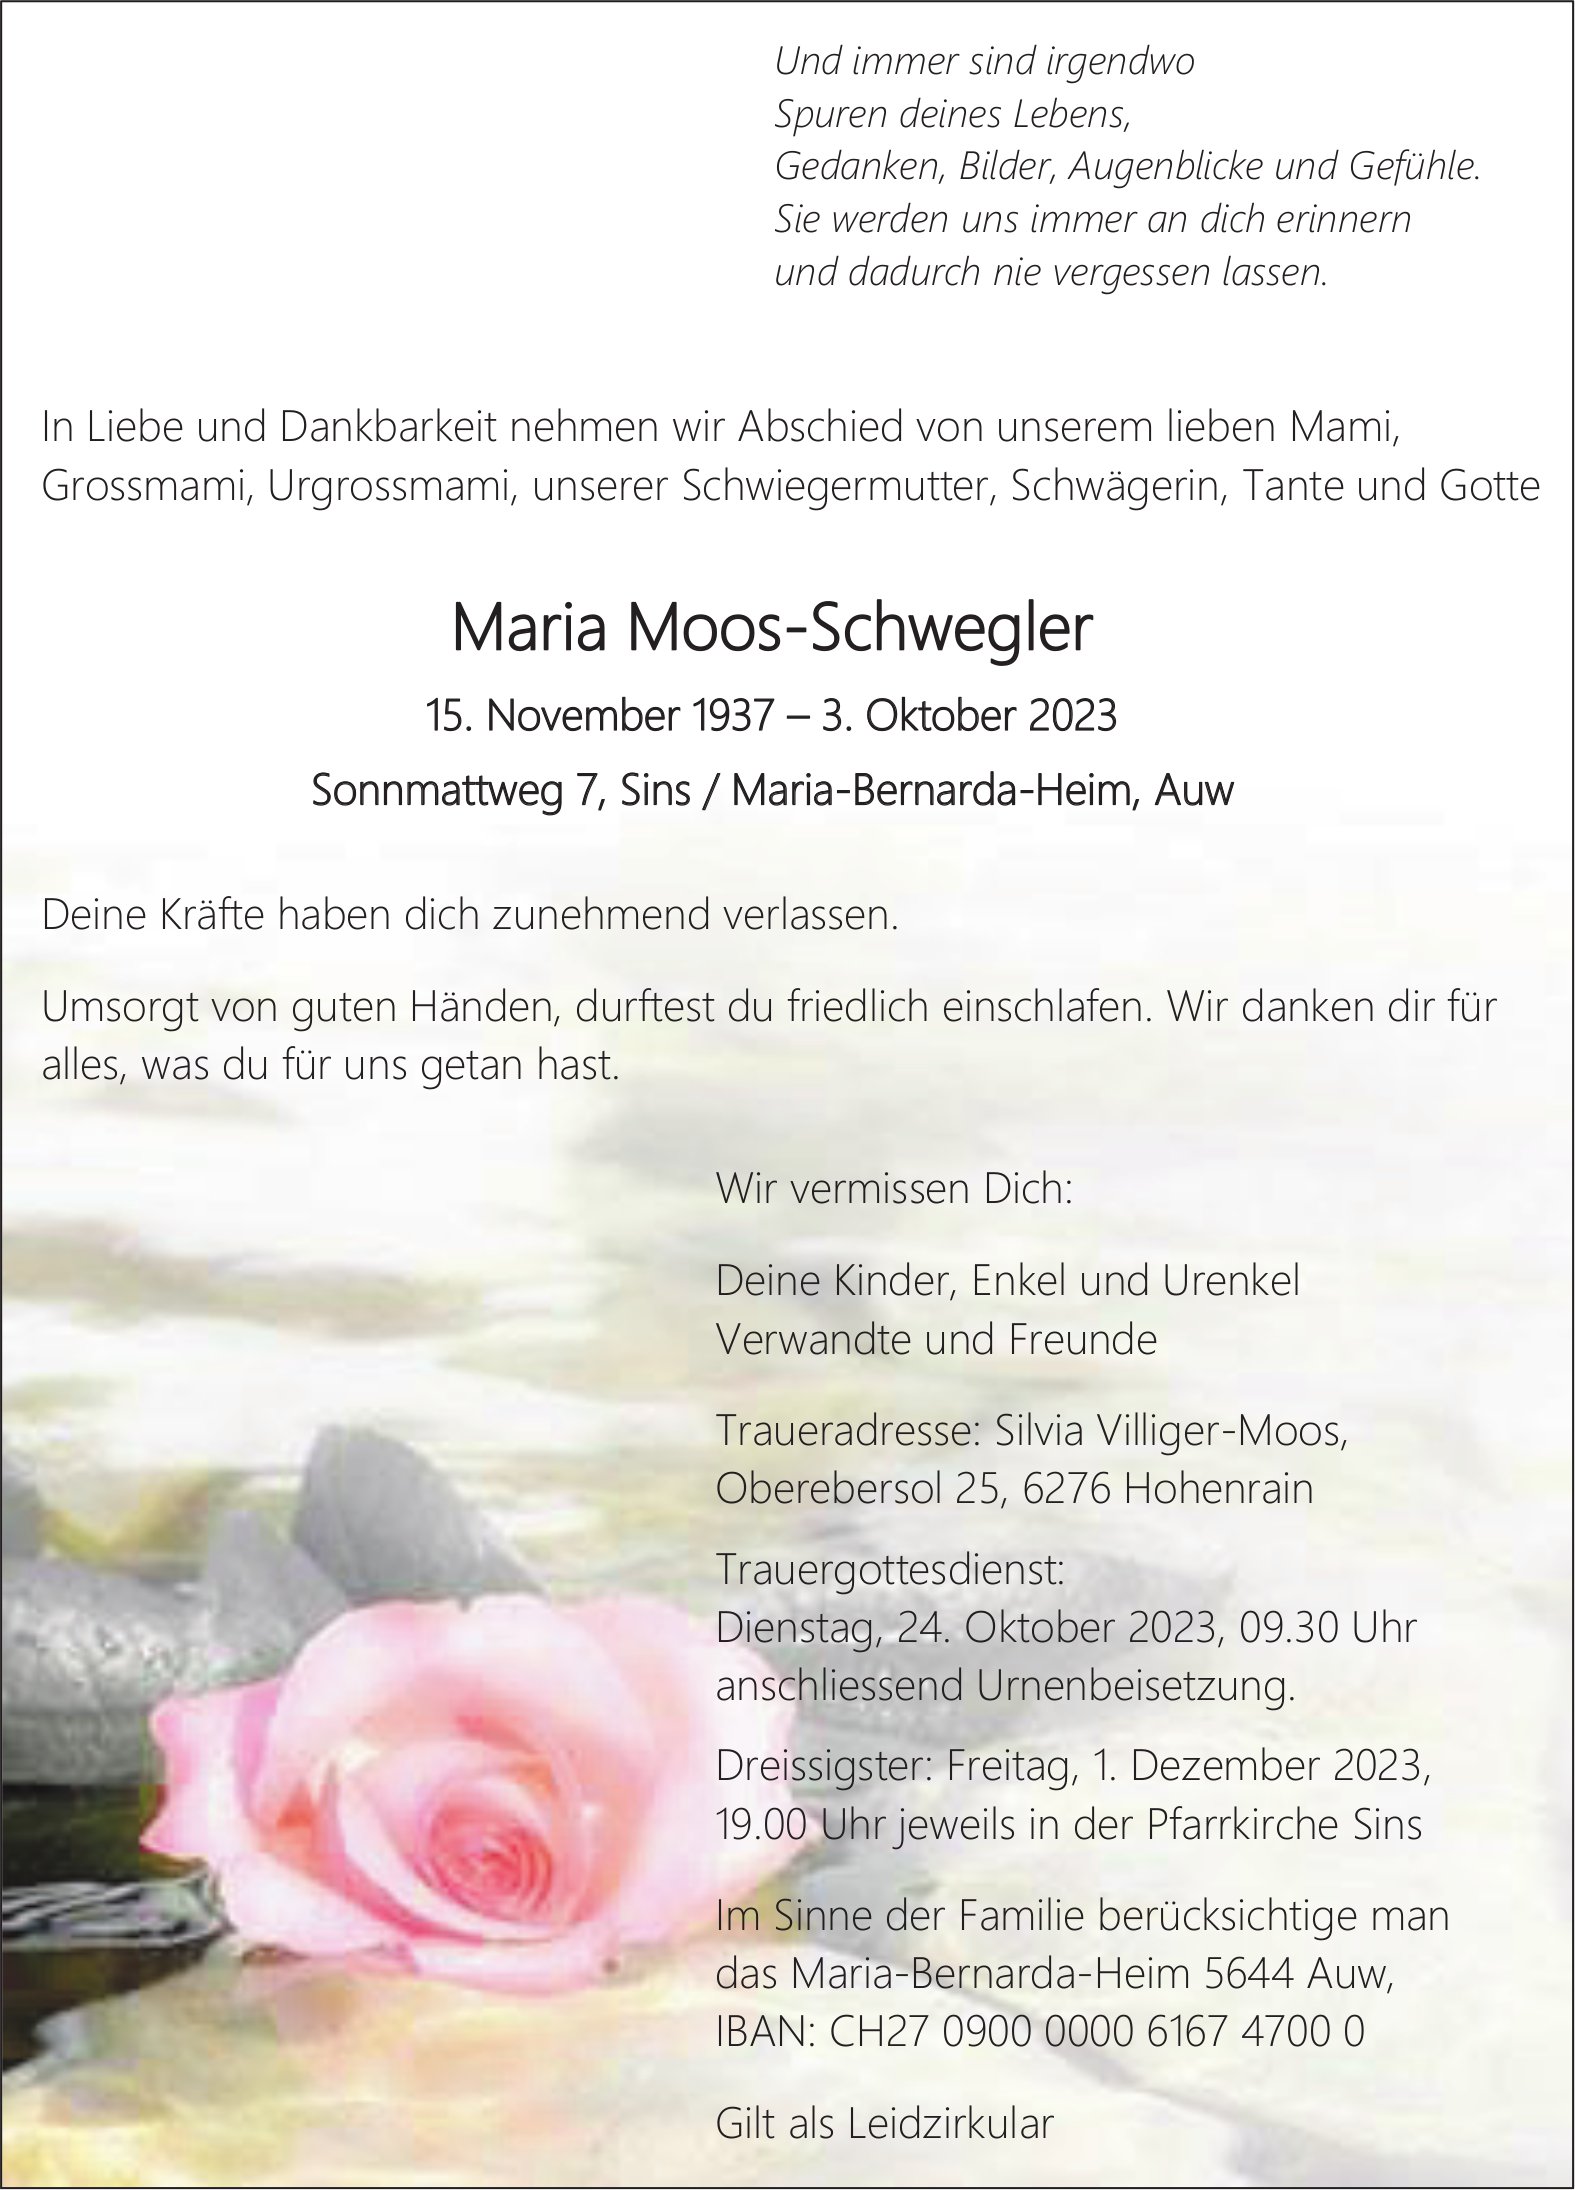 Maria Moos-Schwegler, Oktober 2023 / TA